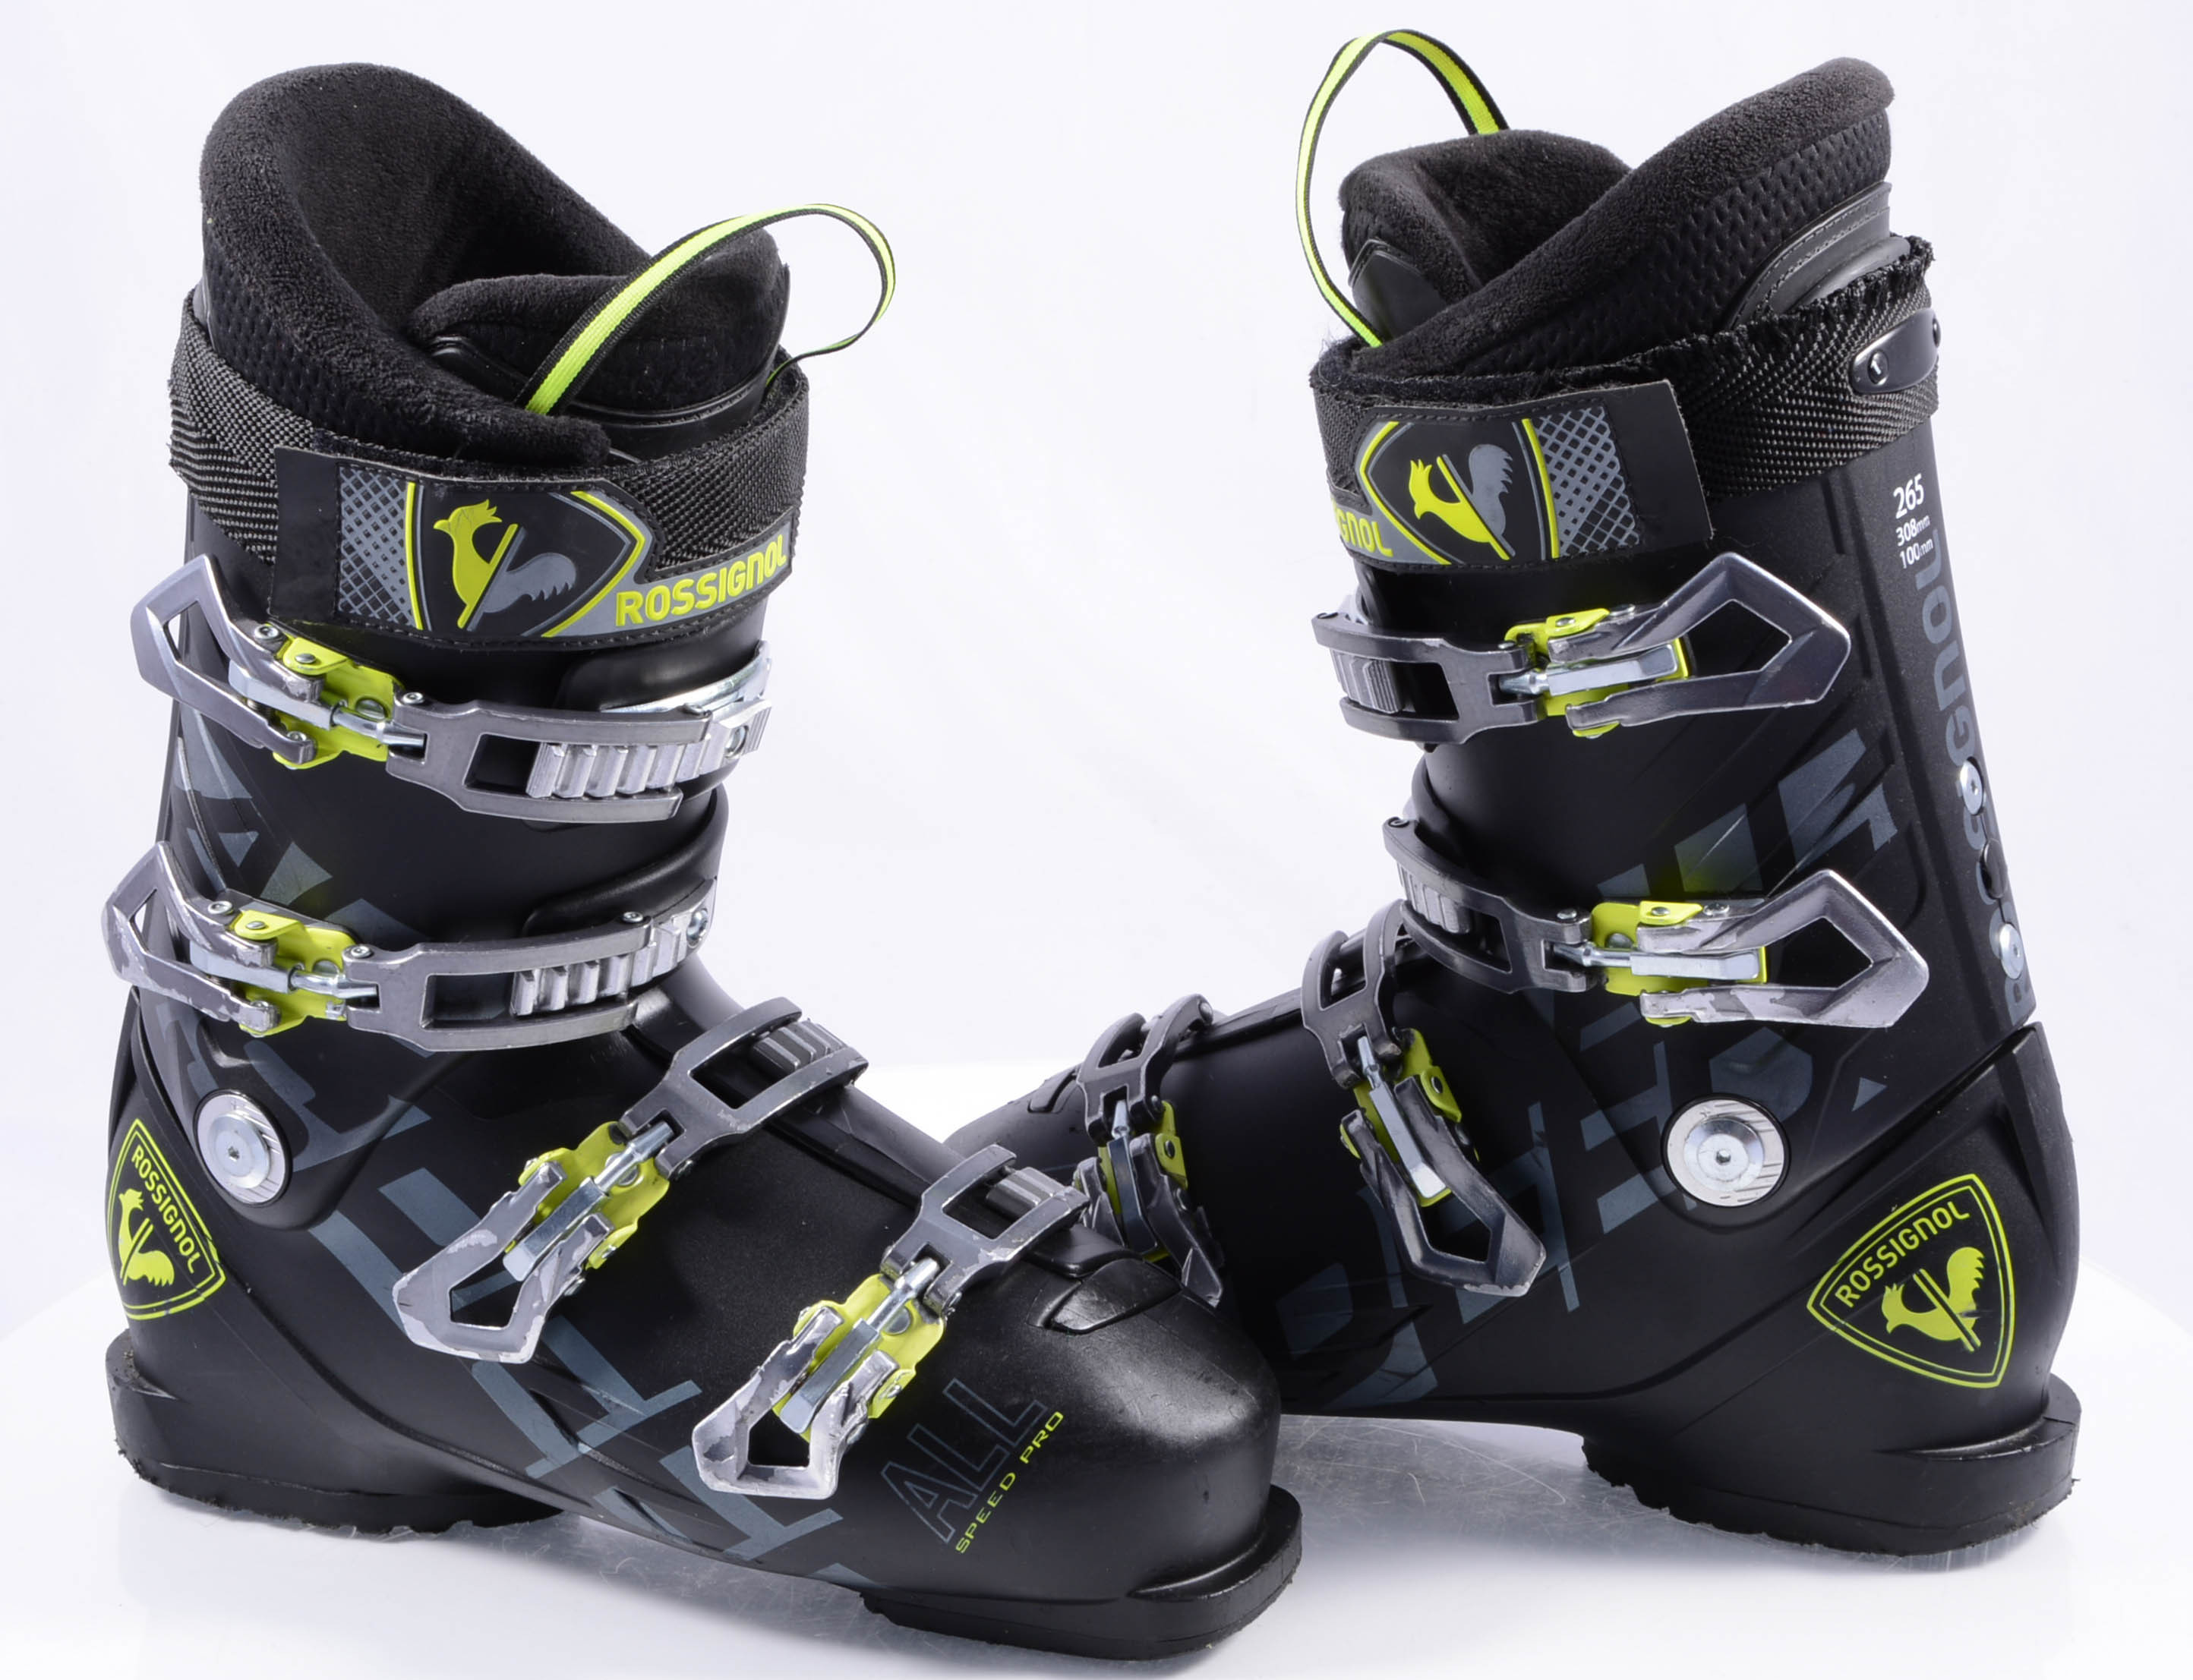 Fascineren Datum Bewolkt skischoenen ROSSIGNOL ALLSPEED PRO, comfort fit, micro, black/yellow -  Mardosport.nl